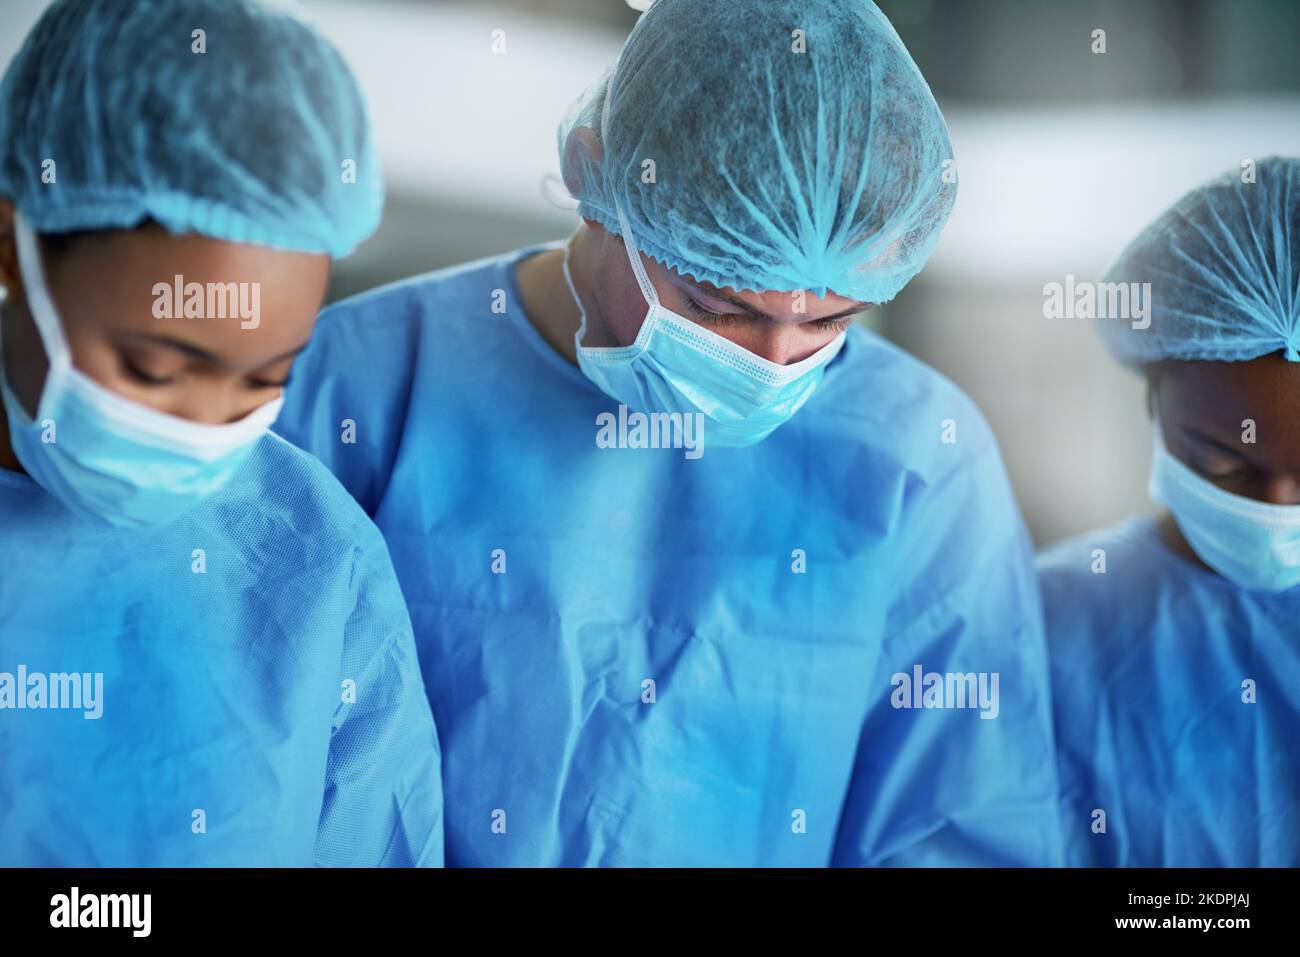 Scharfe Augen, ruhige Hände. Ein Team von Chirurgen, die einen medizinischen Eingriff in einem Operationssaal durchführen. Stockfoto